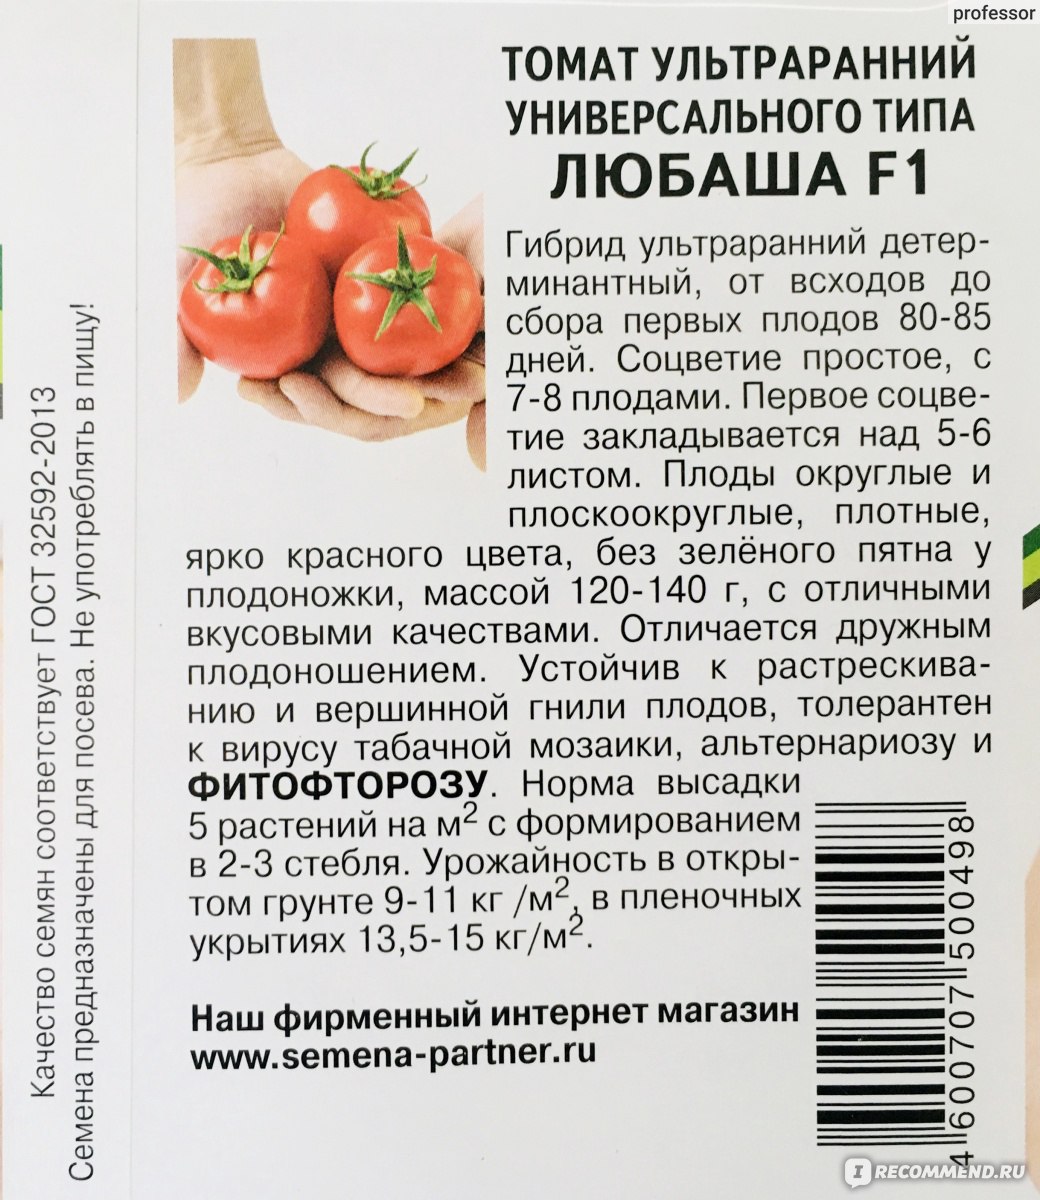 Неустойчивый к заболеваниям, но очень вкусный томат — турбореактивный: отзывы, описание сорта